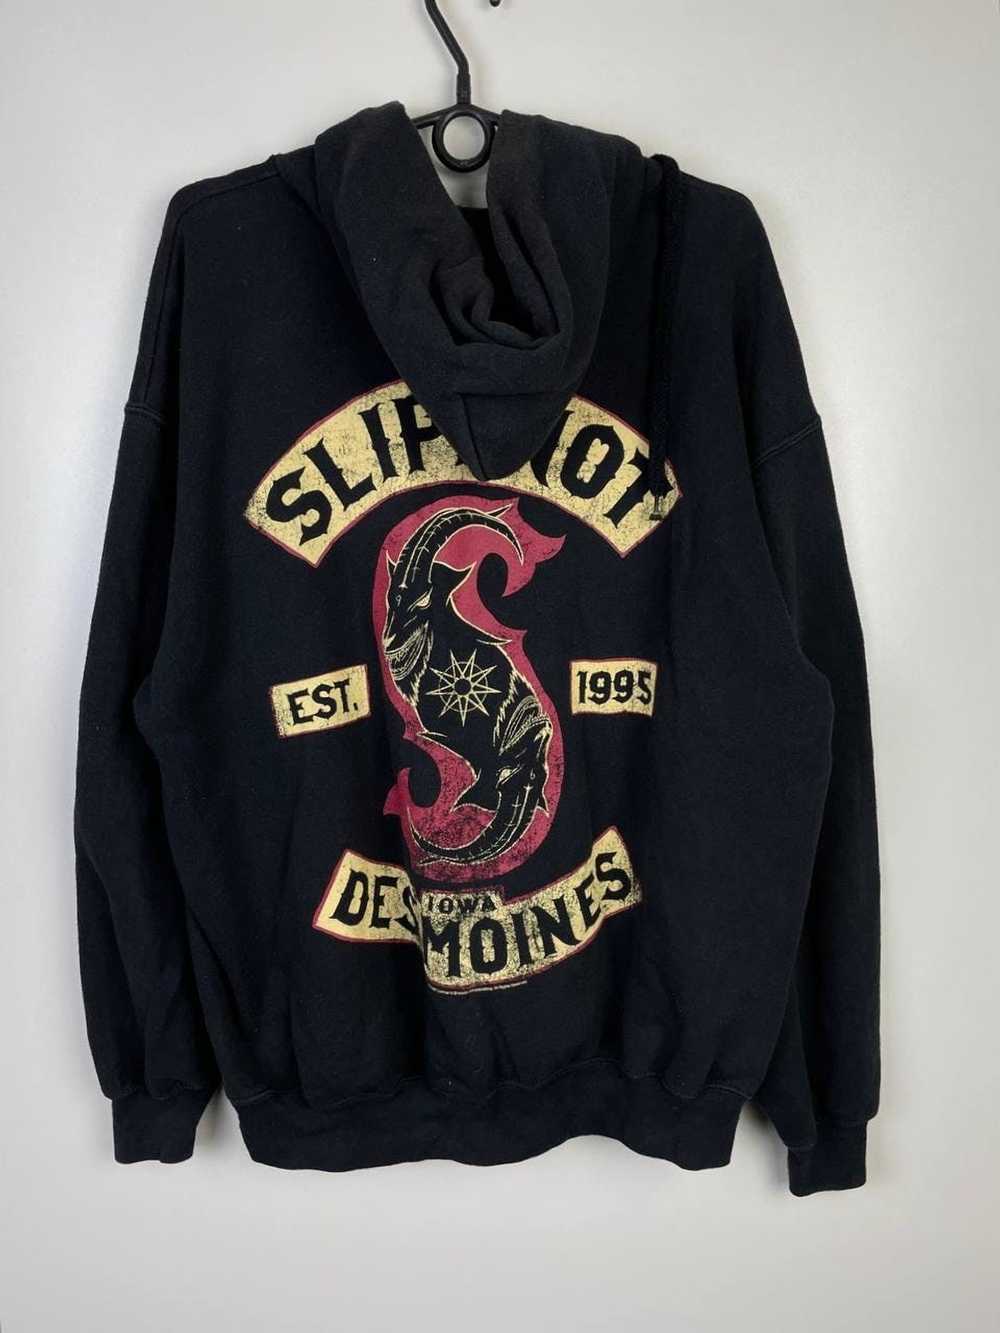 Slipknot × Vintage Slipknot vintage hoodie size Xl - image 3